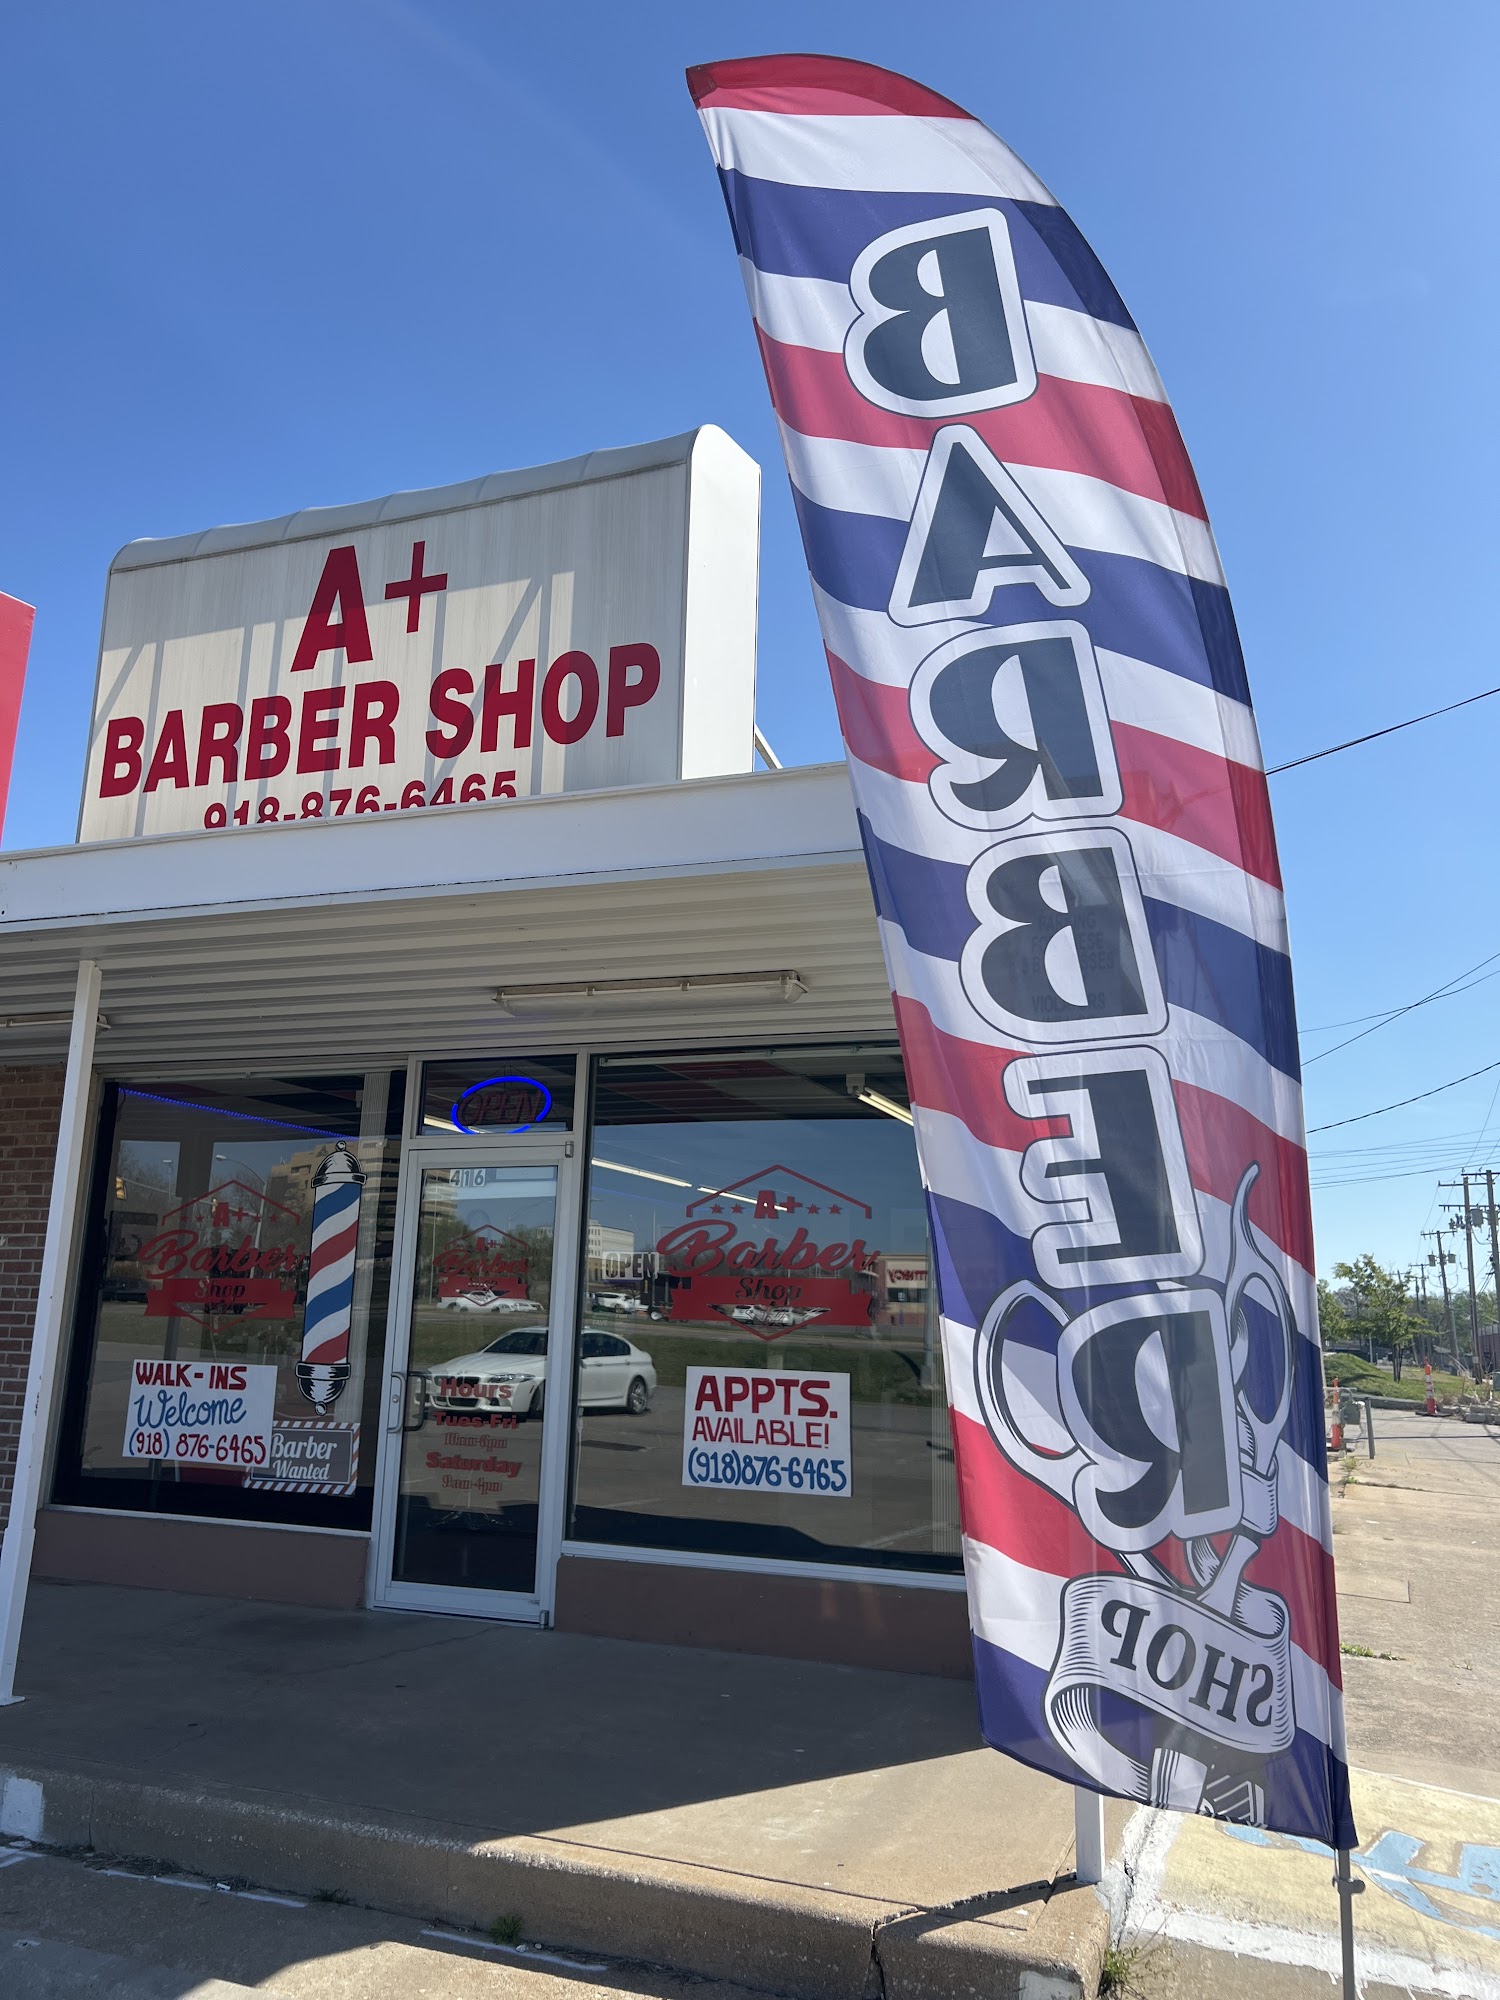 A+ Barber Shop